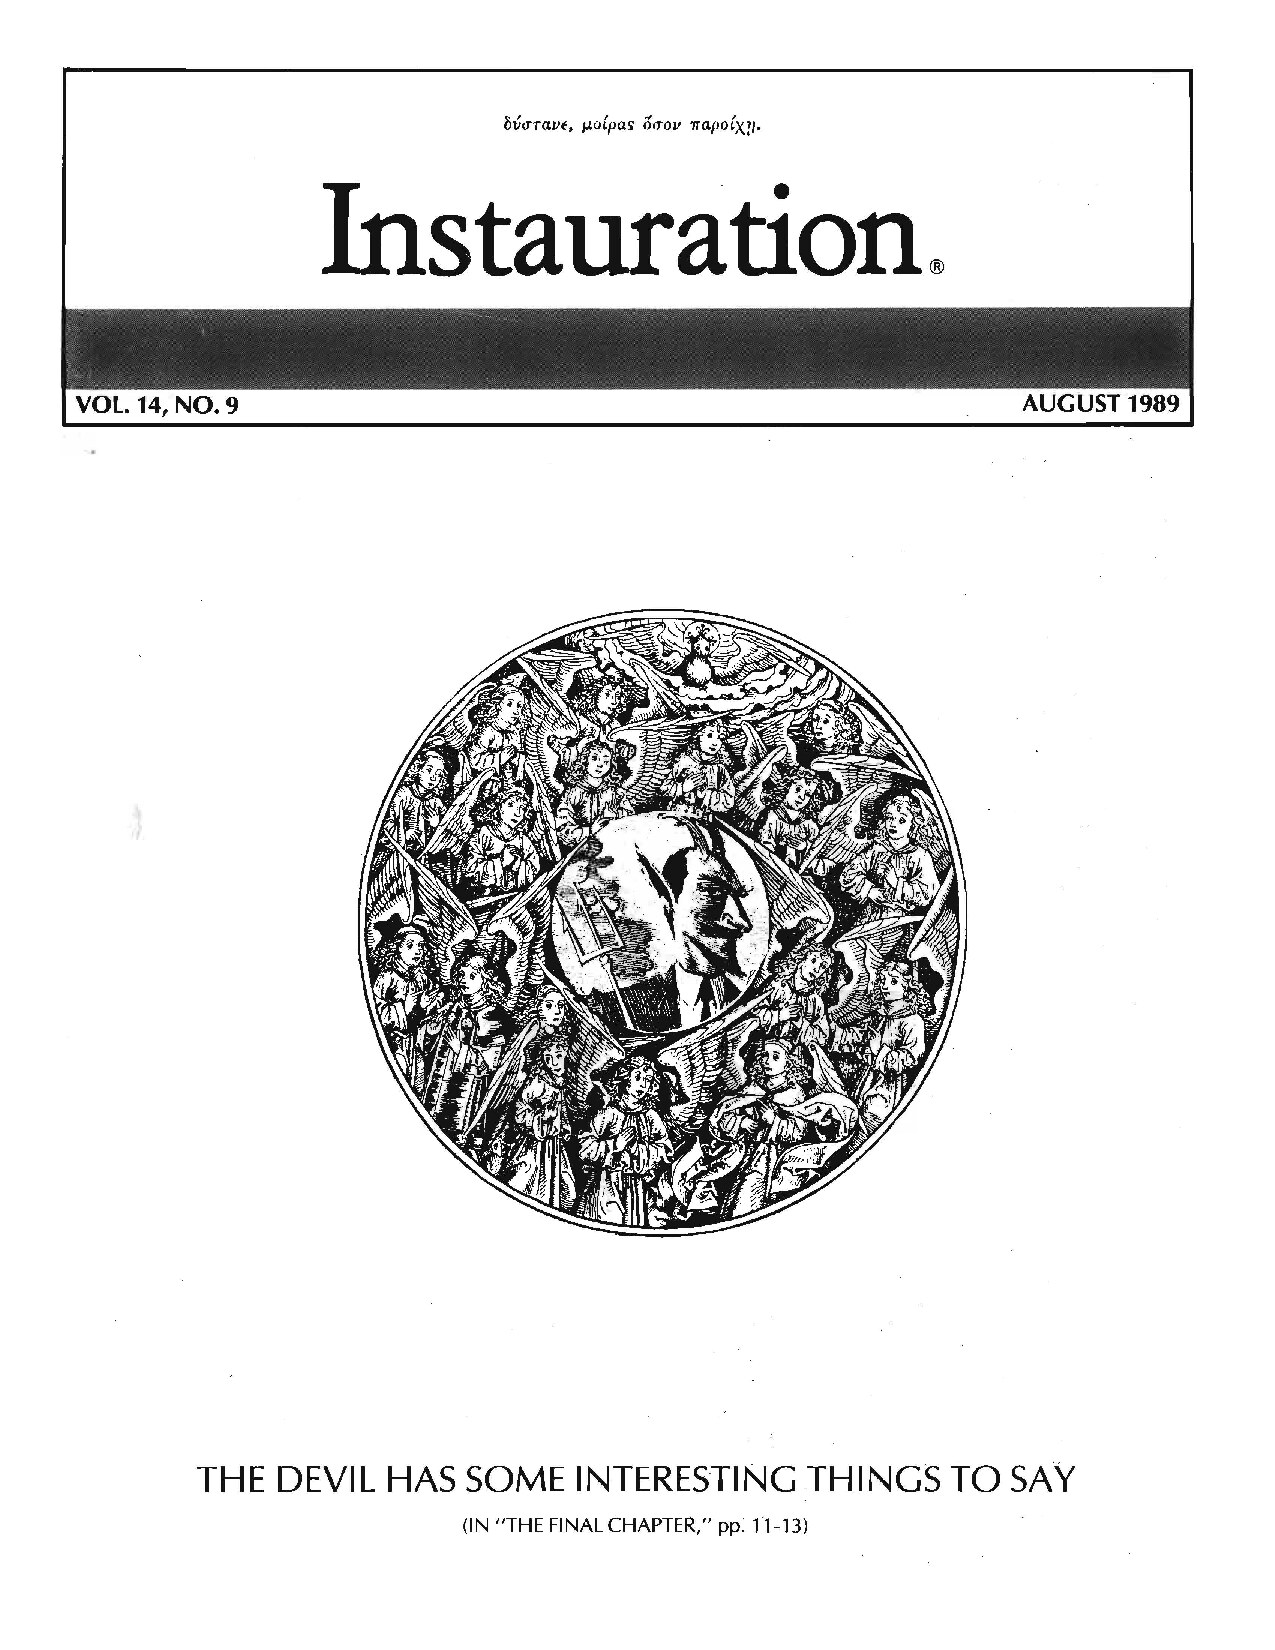 Instauraton 1989 August p1-20